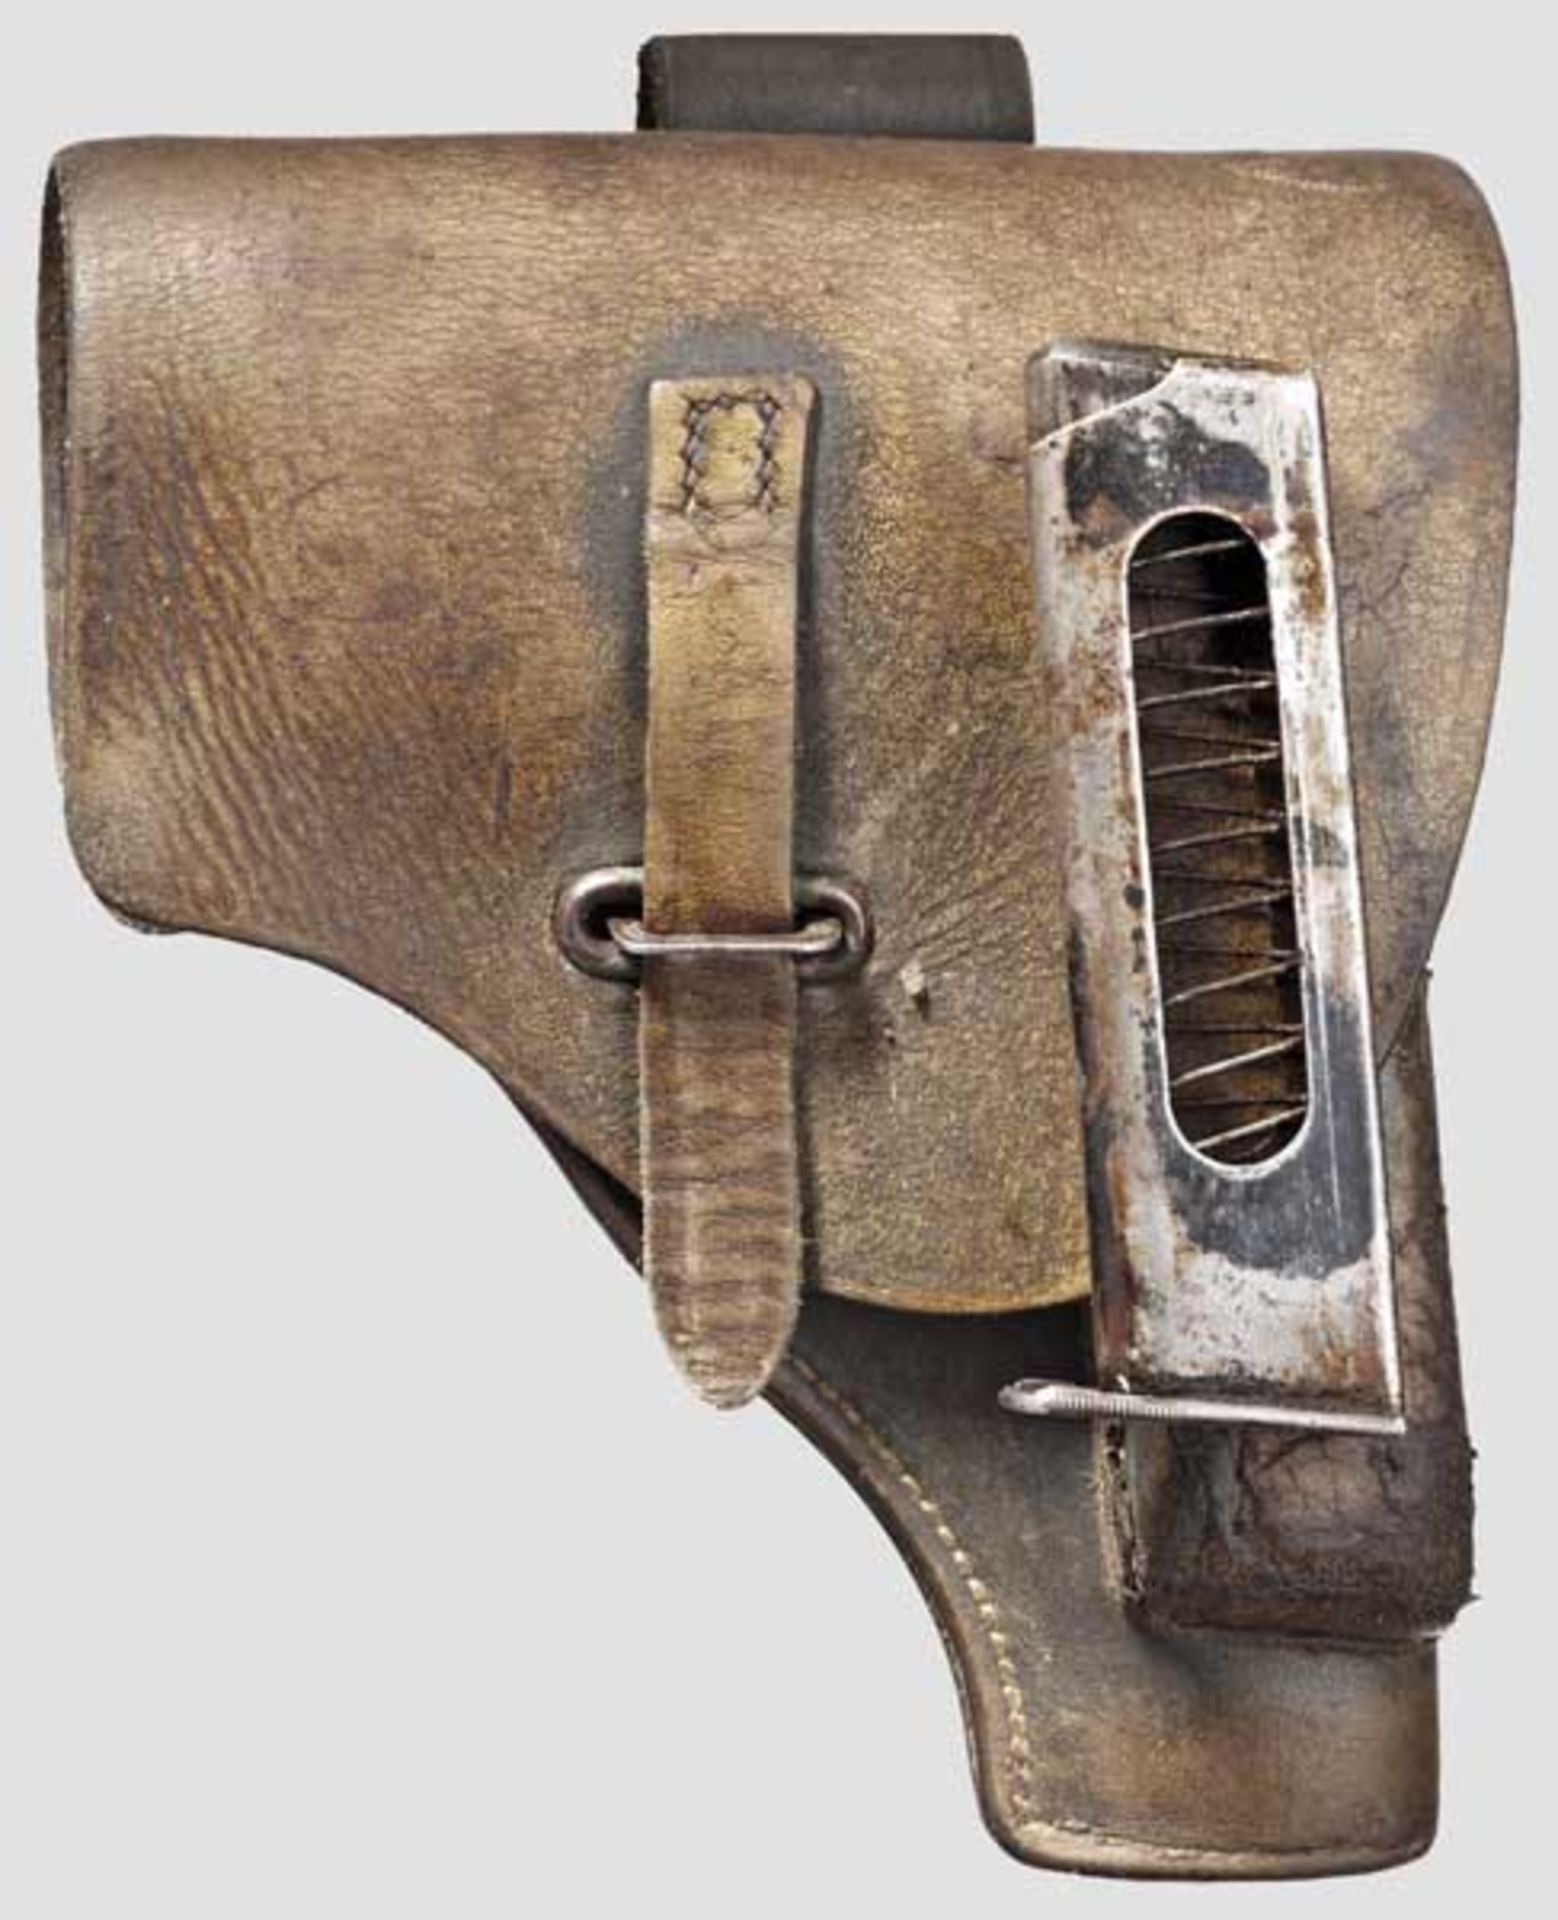 Beretta Mod. 34, mit Tasche   Kal. 9 mm kurz, Nr. 940761. Nummerngleich. Fast blanker Lauf. - Bild 2 aus 2